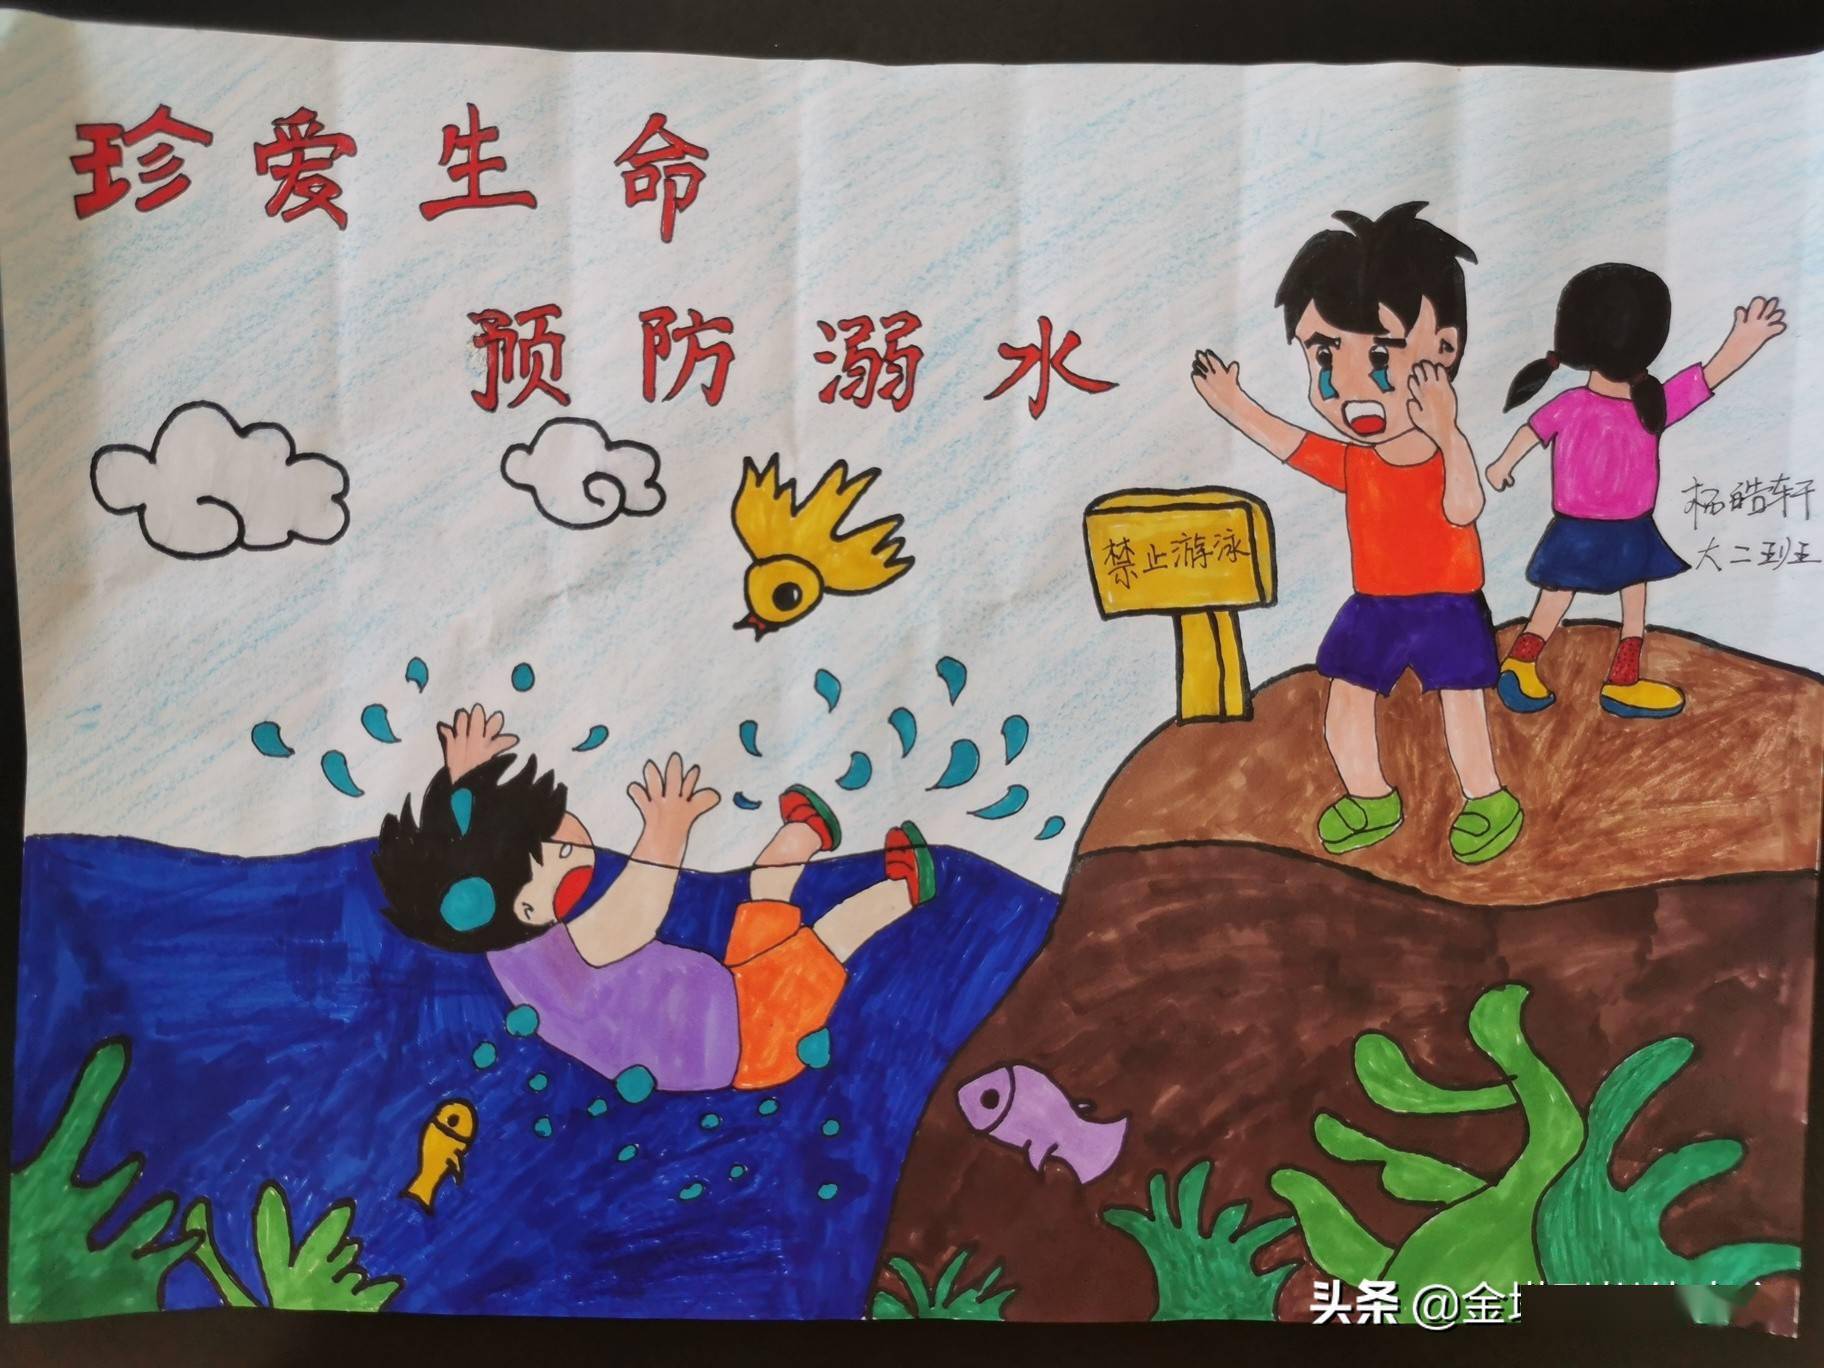 预防溺水"系列活动之亲子绘画,引导幼儿认识溺水事故的危害,同时提醒